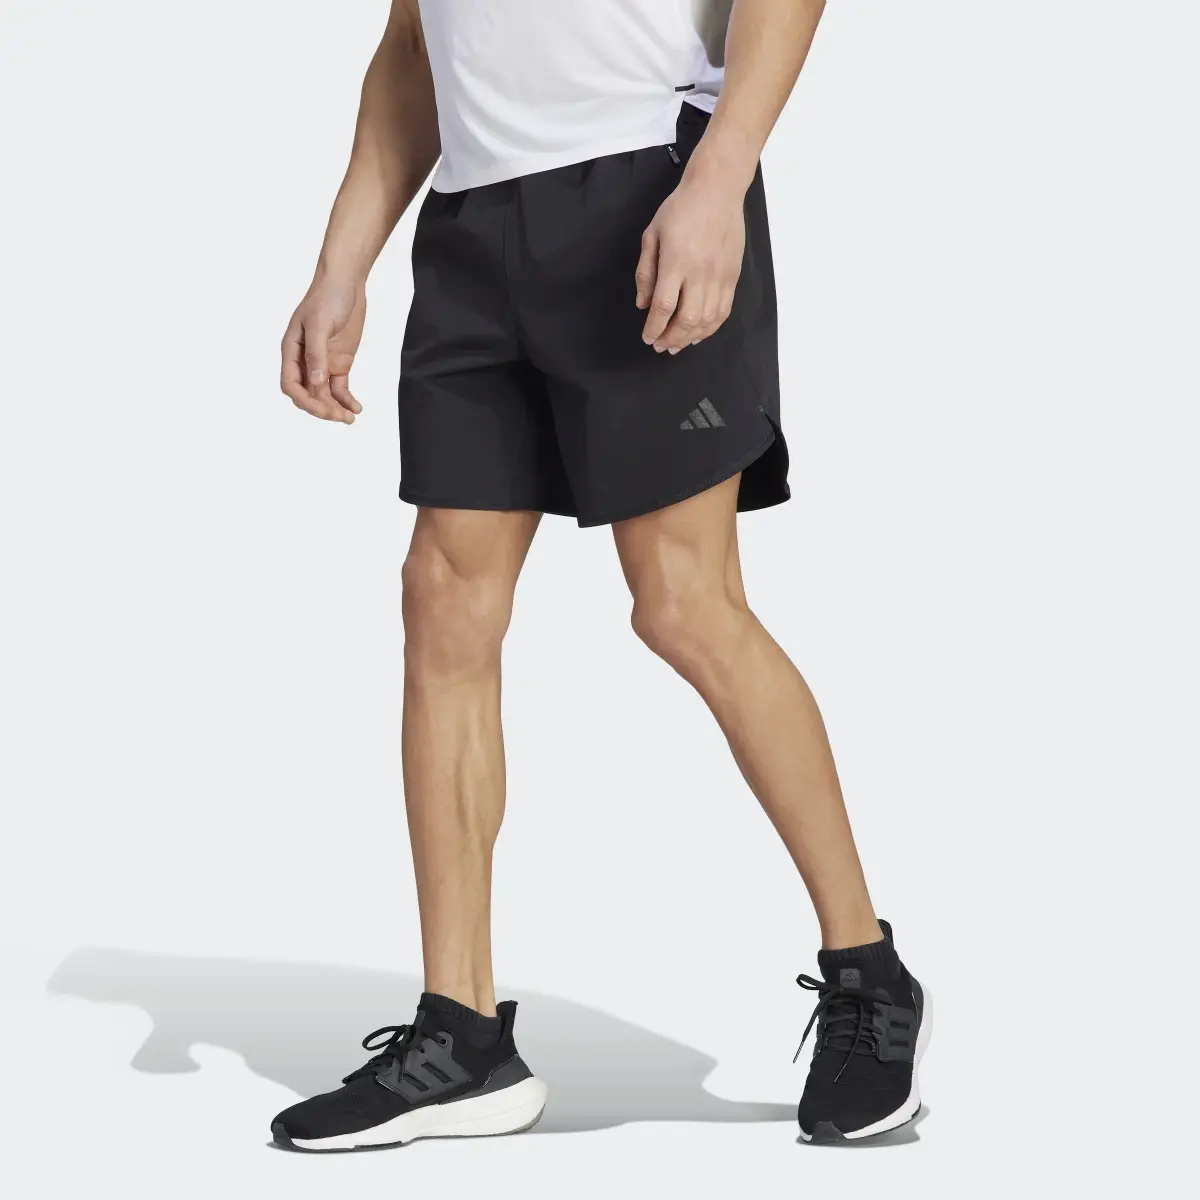 Adidas Designed 4 Training CORDURA Workout Shorts. 1